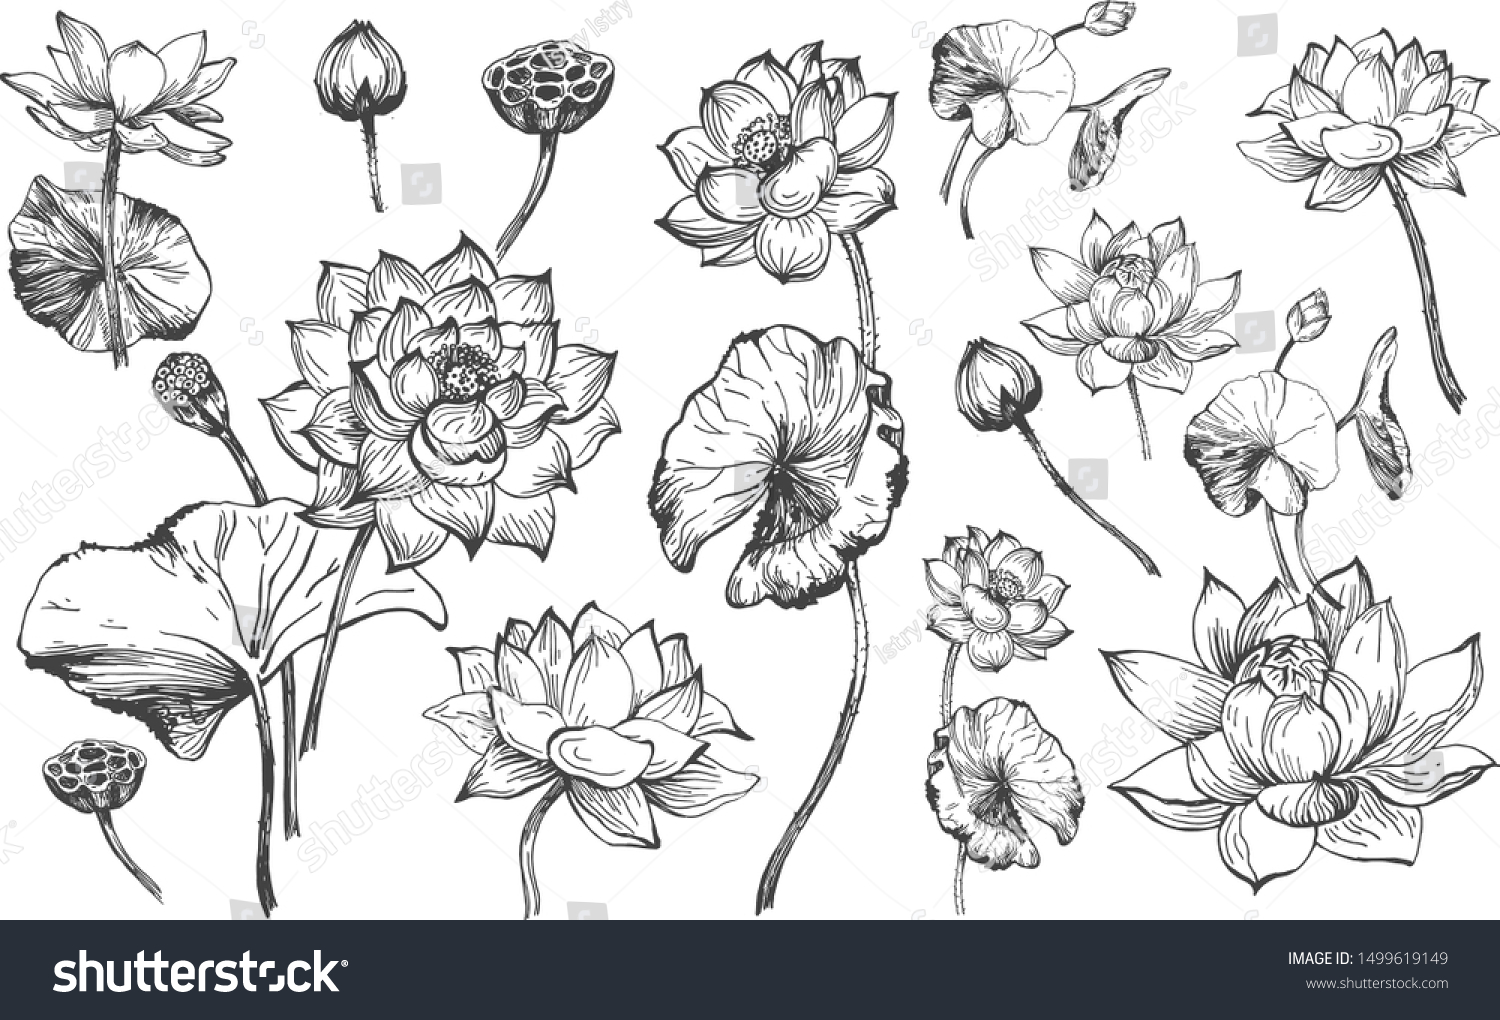 花柄の植物セットのベクターイラスト 蓮の花が咲き 花の芽 芽 葉が異なる角度からグラフィックな白黒のスタイルで描かれている ビンテージ手描きのスタイル のベクター画像素材 ロイヤリティフリー